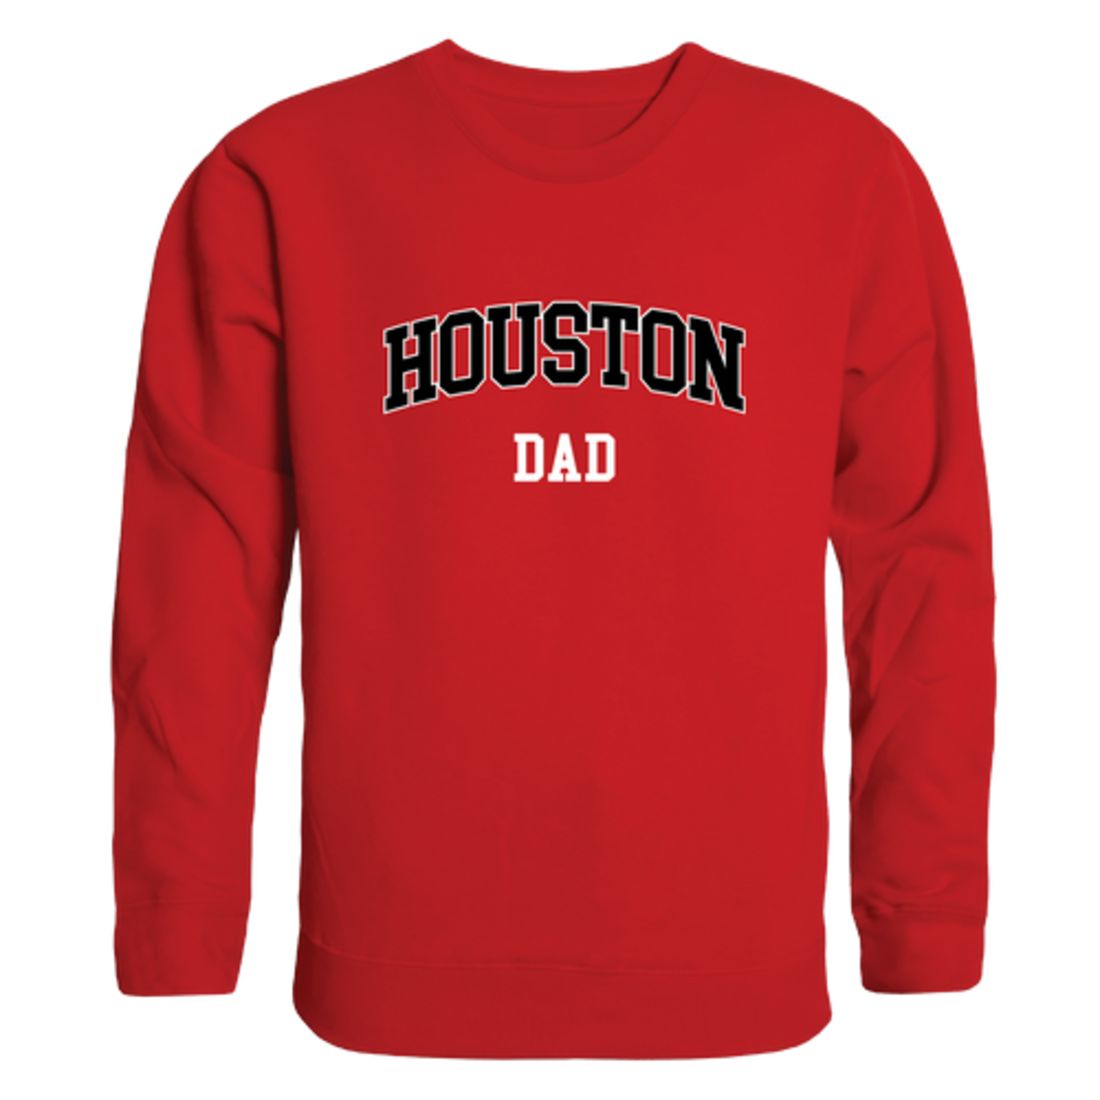 UH University of Houston Cougars Dad Fleece Crewneck Pullover Sweatshirt Heather Grey-Campus-Wardrobe